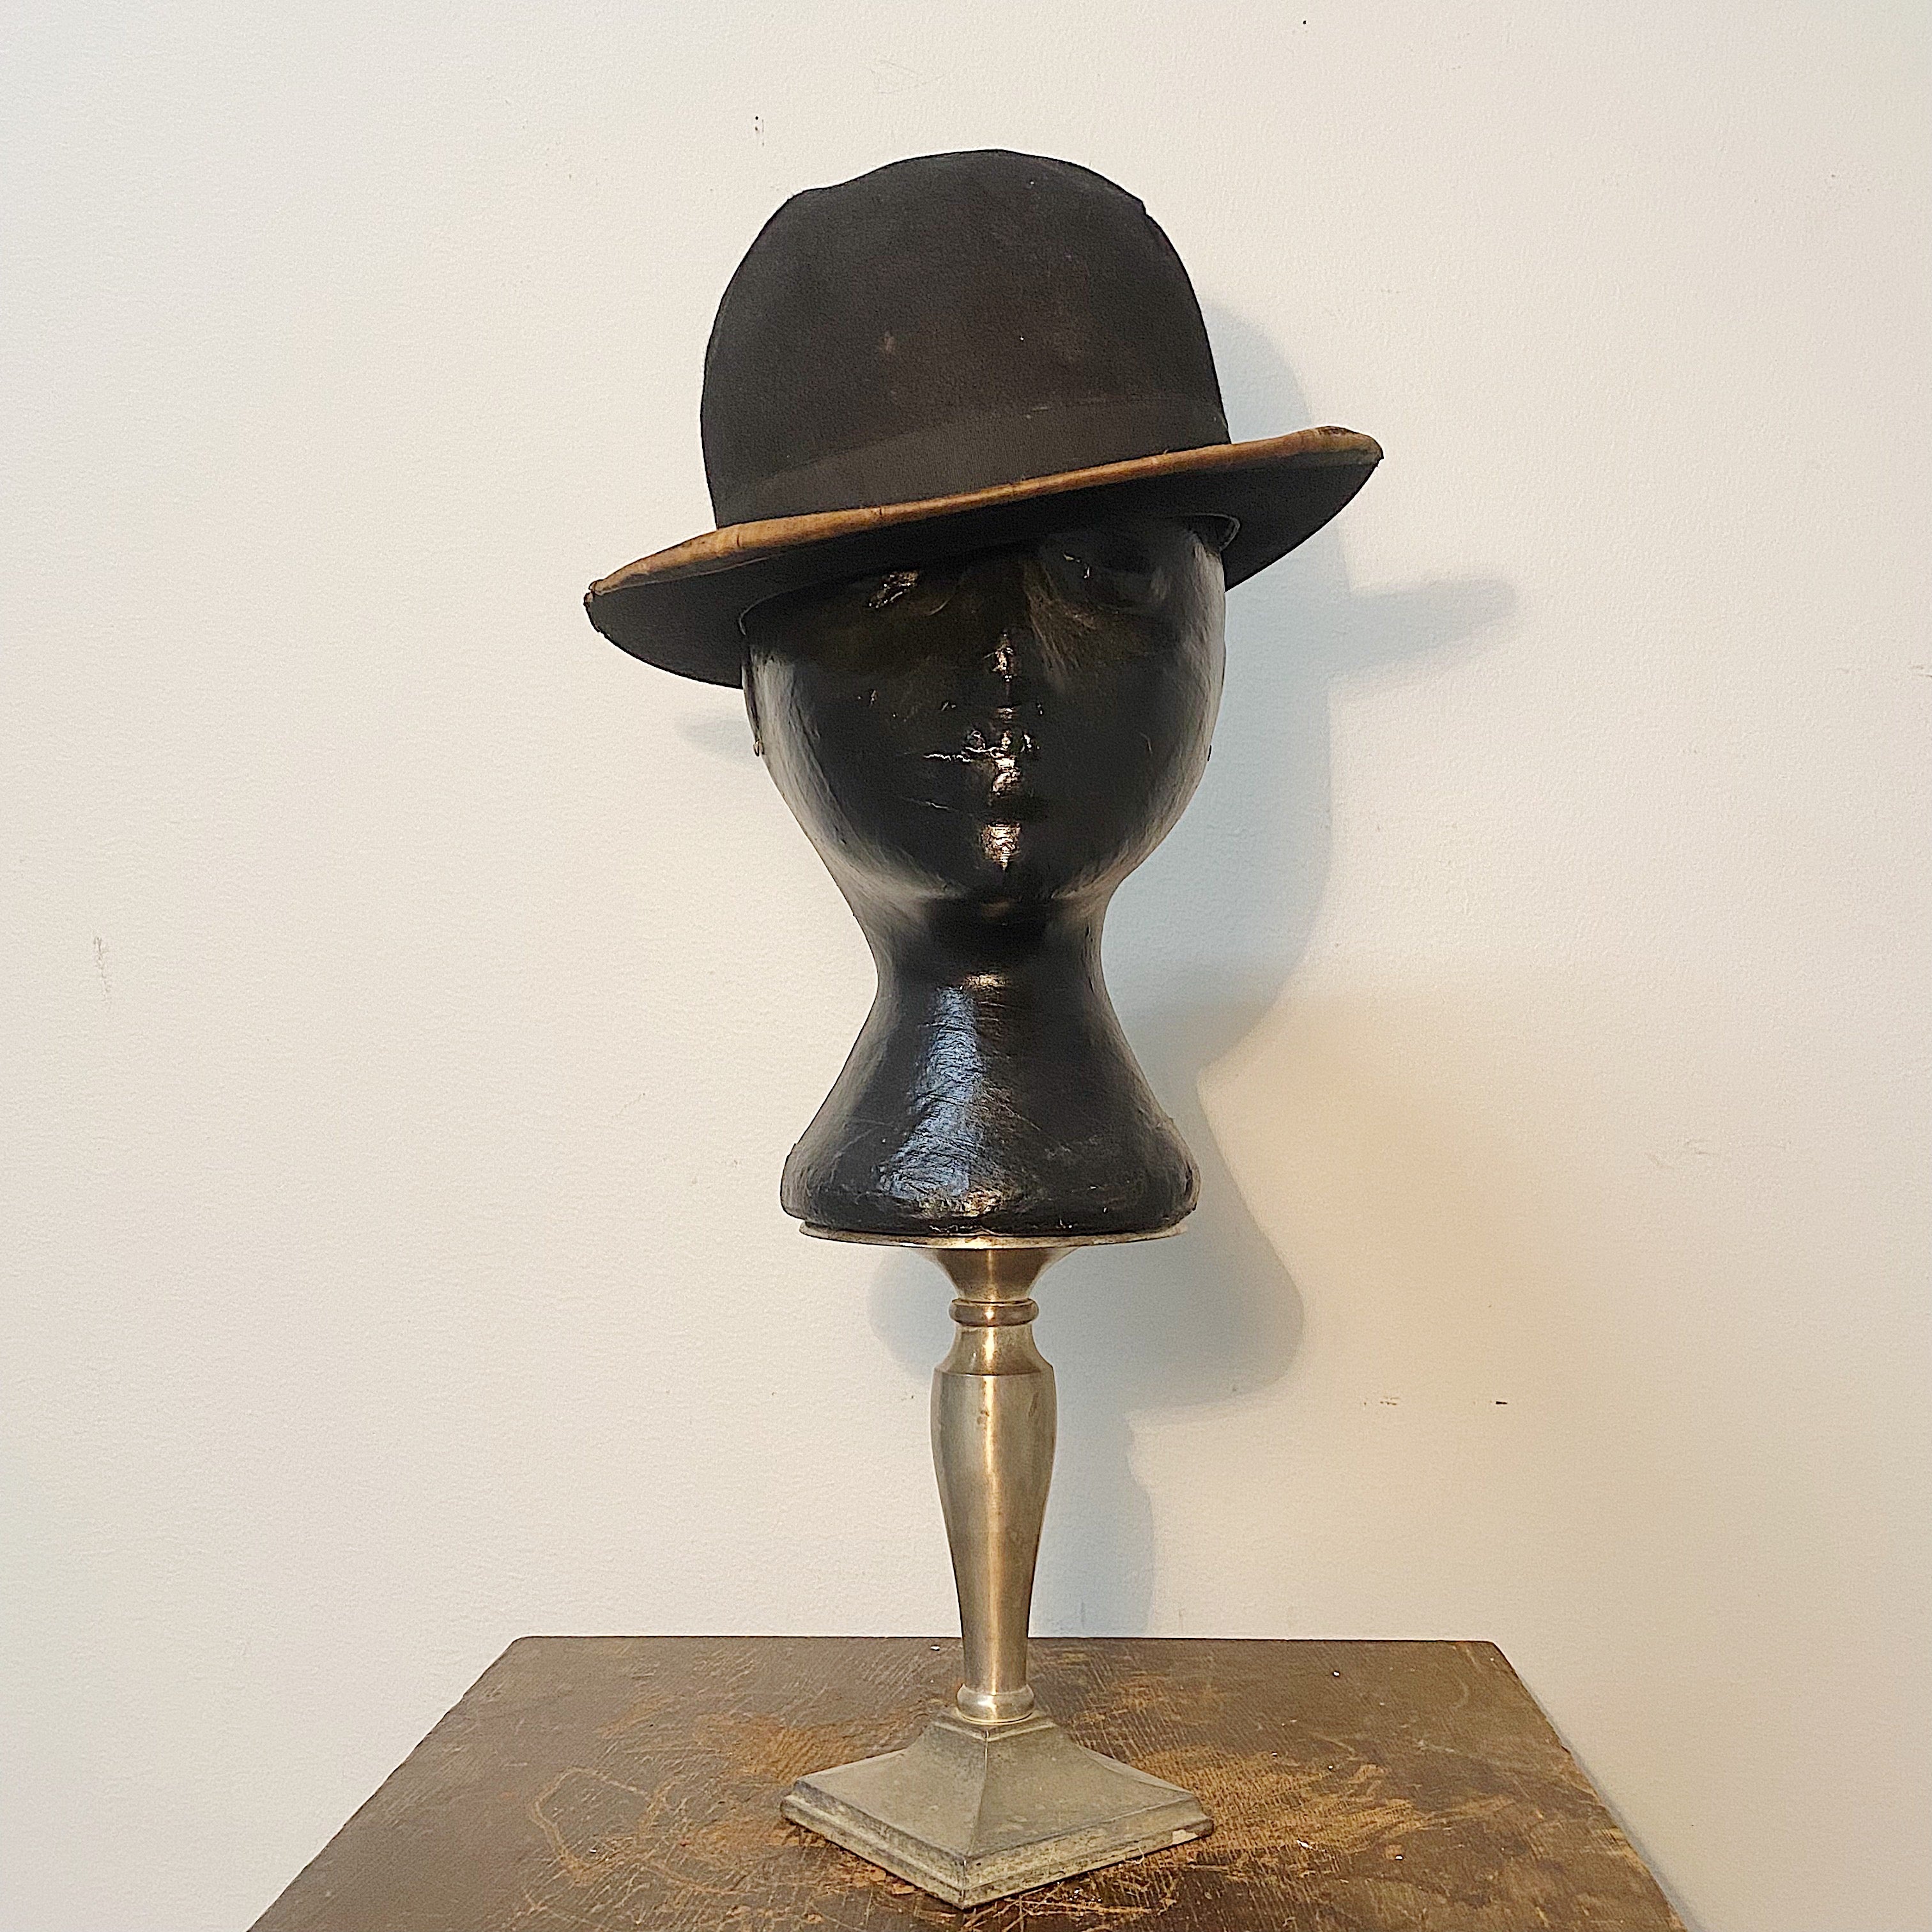 Antique Bellemont Bowler Hat | Early 1900s Gangster